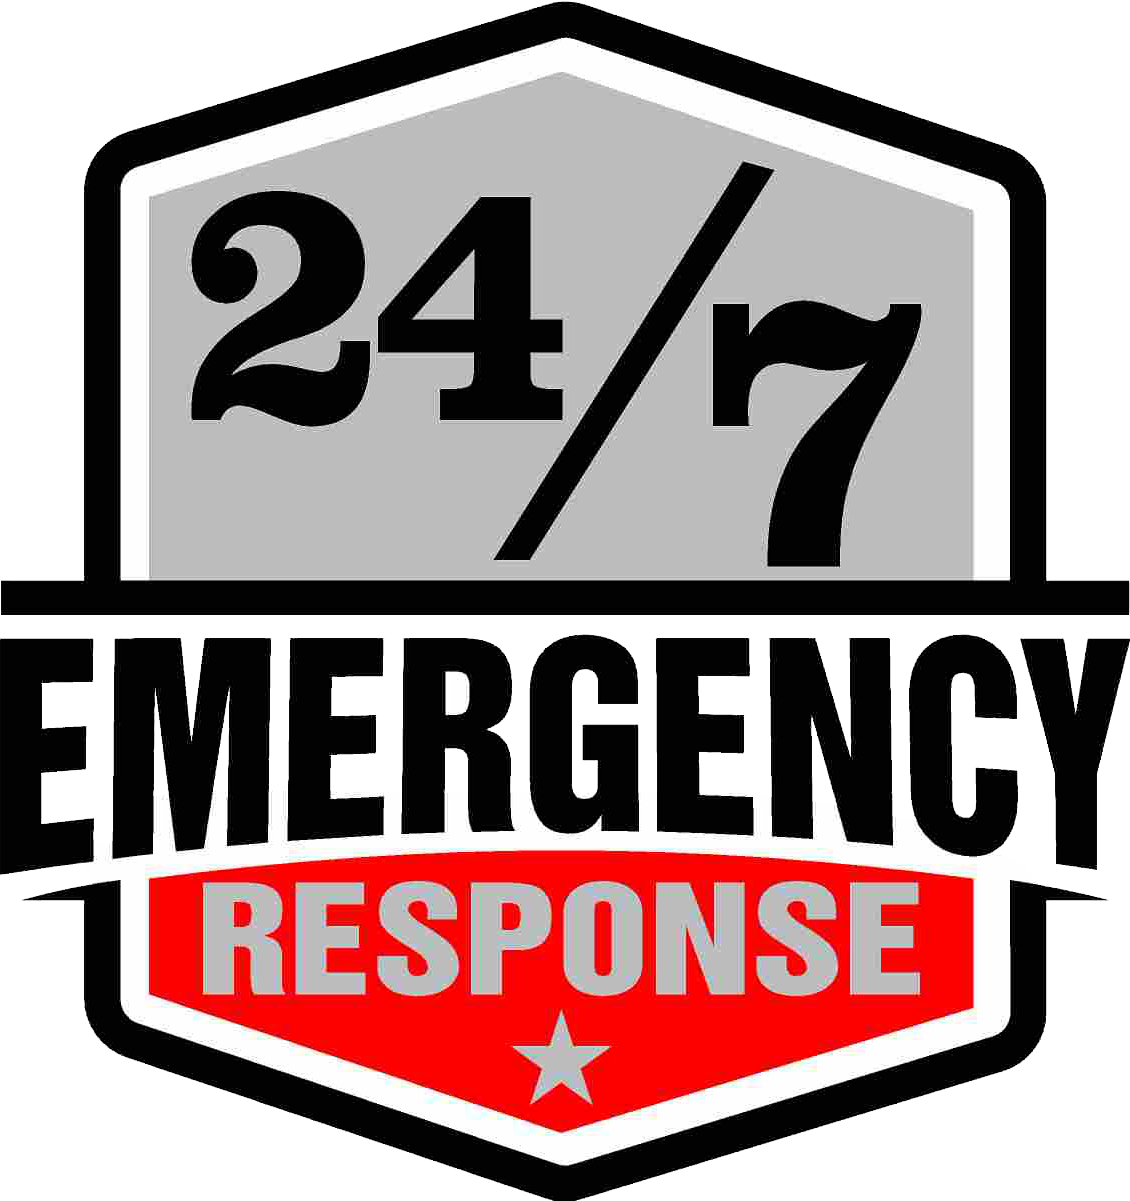 24/7 Emergency Response